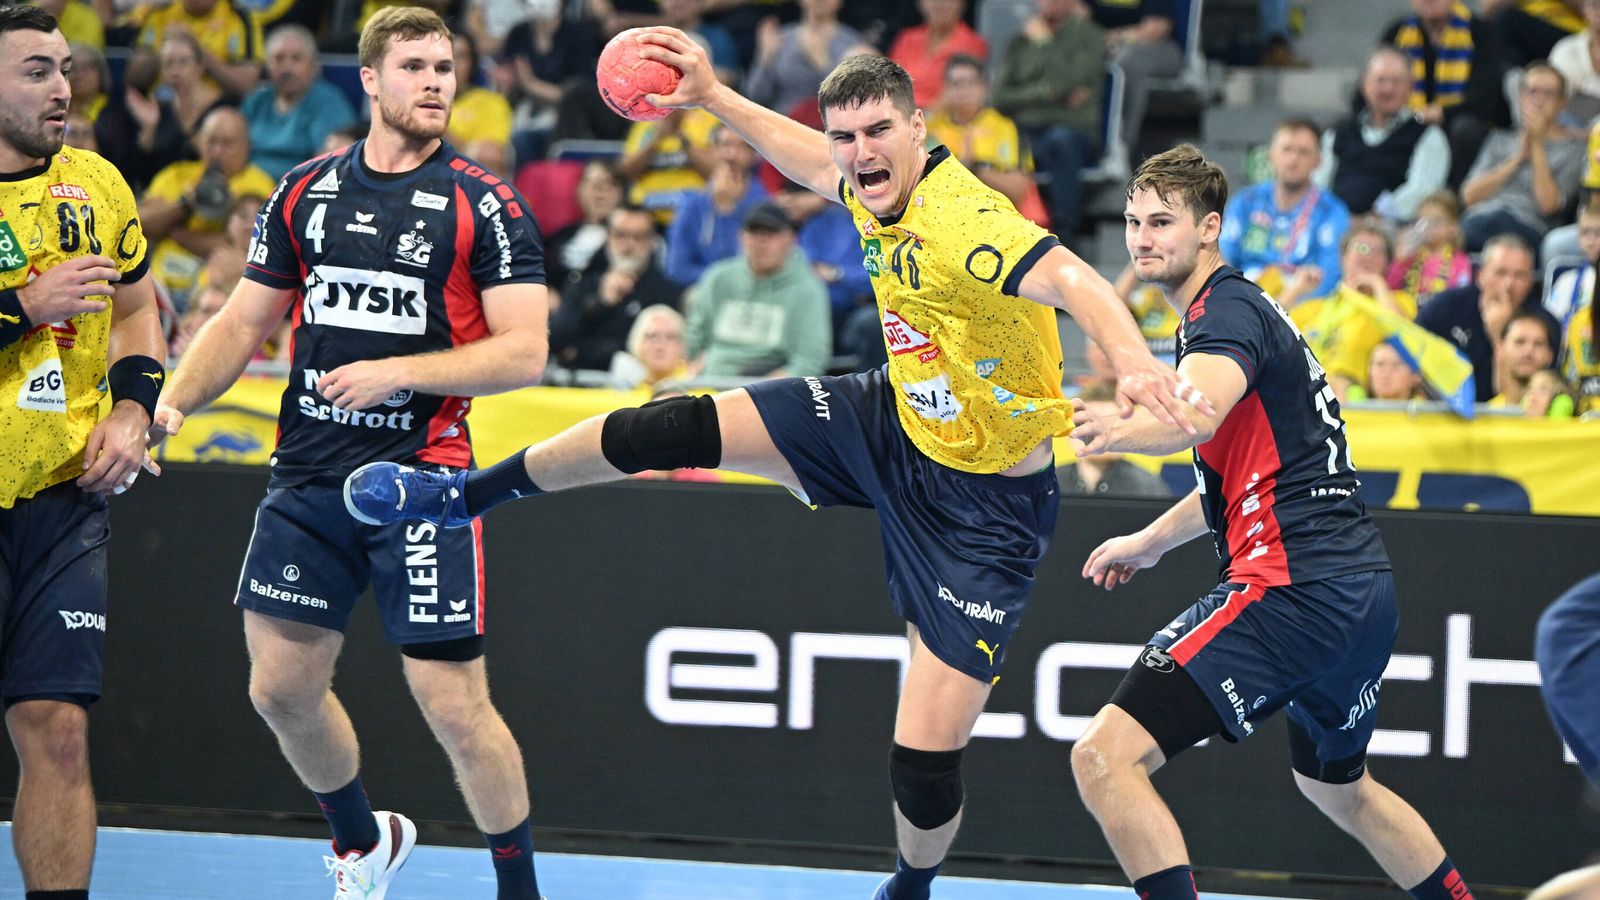 DHB-Pokal Reihenfolge der Halbfinals mit Löwen, Flensburg und Magdeburg festgelegt Handball News Sky Sport